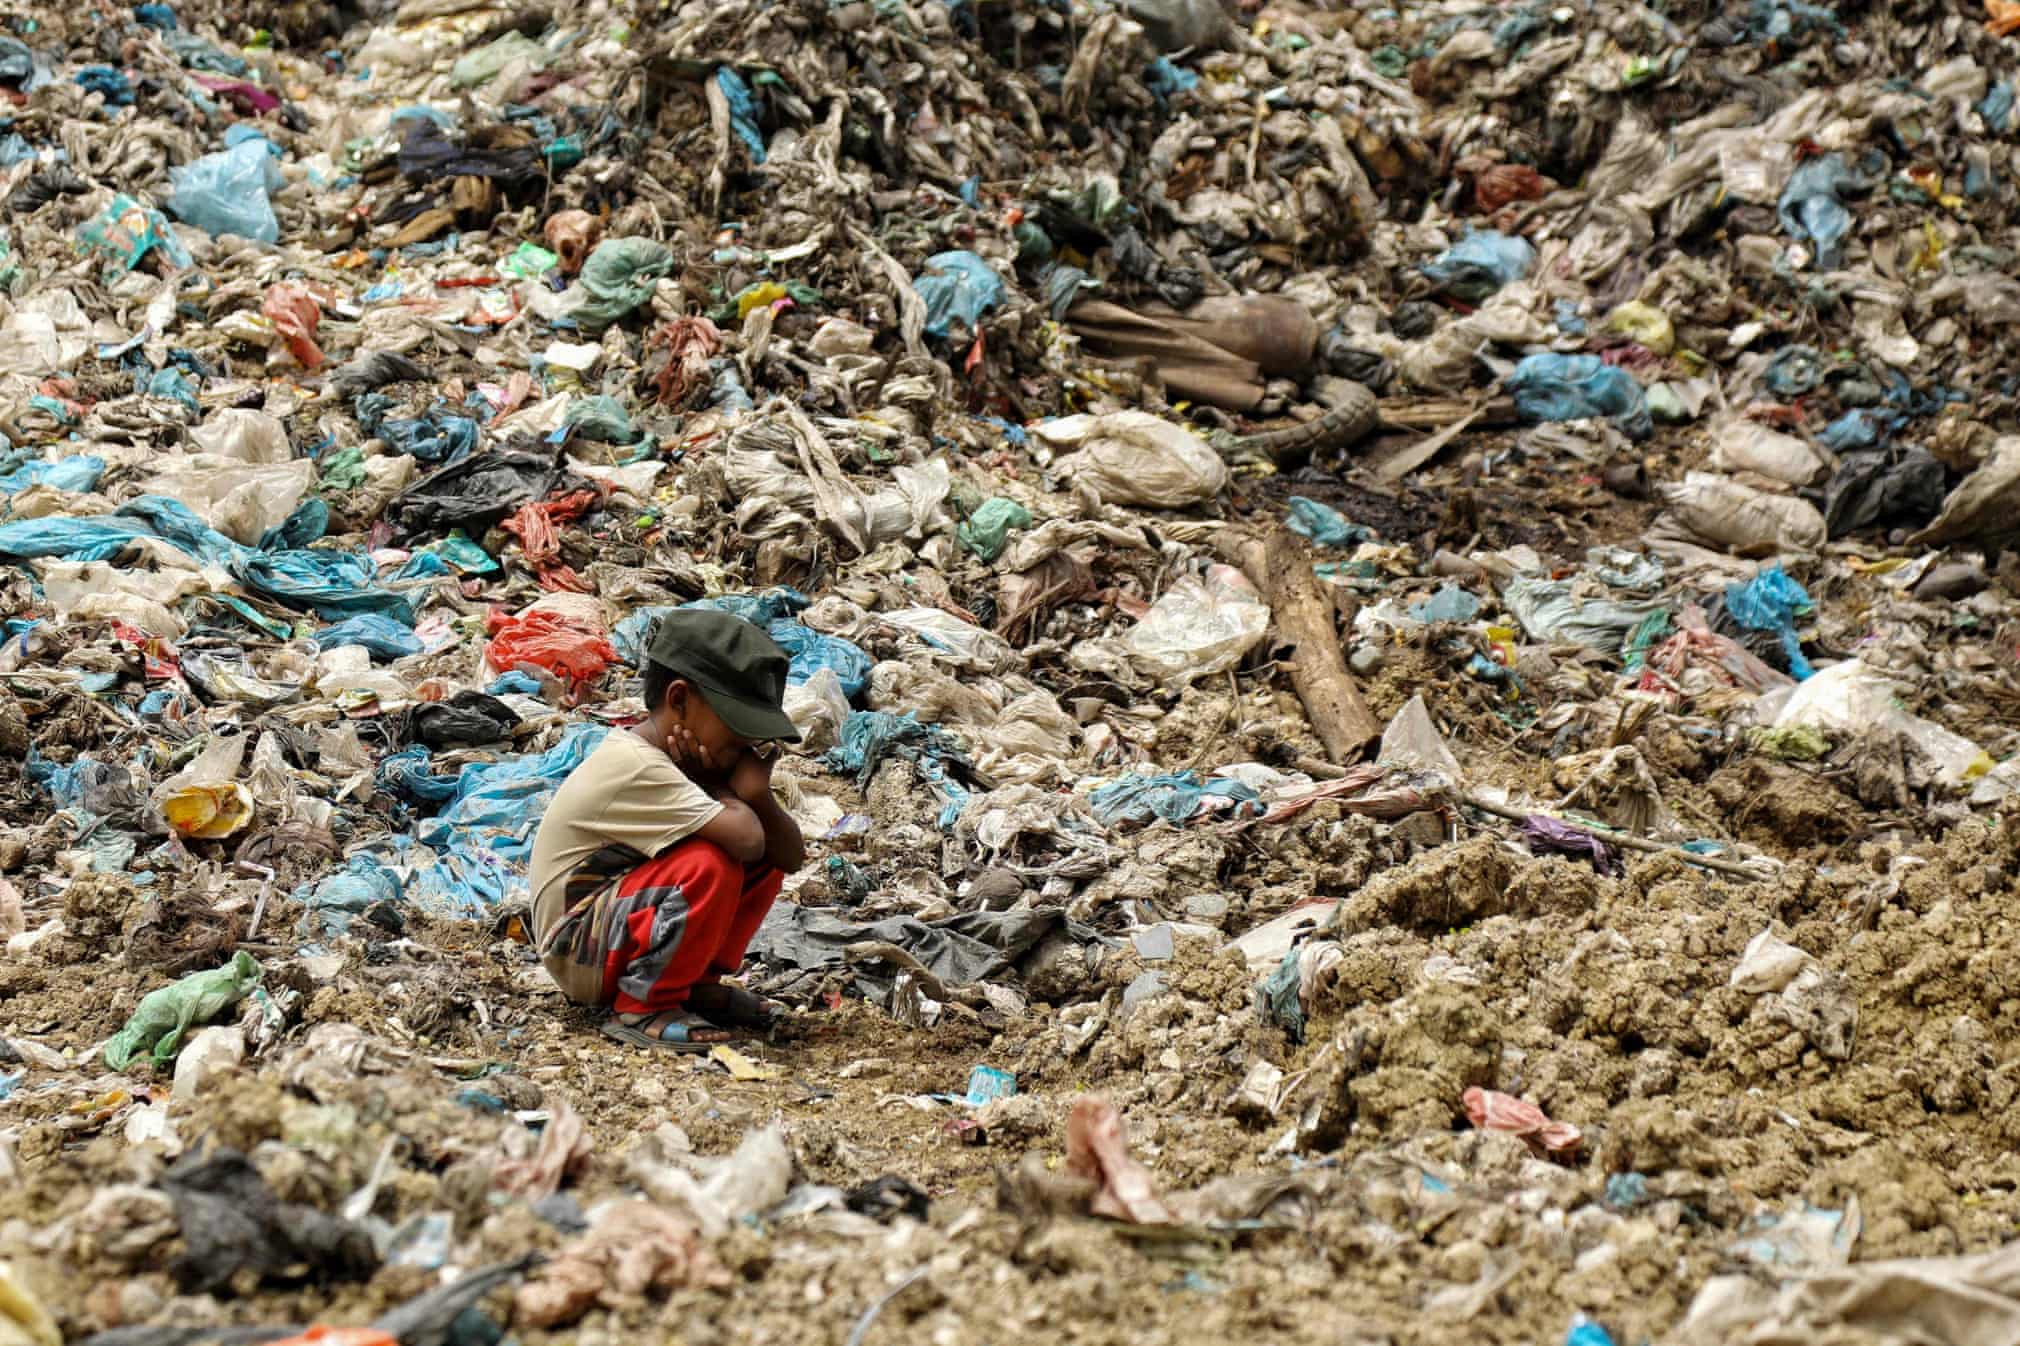 انتظار کودک خردسال برای اتمام کارِ پدرش در میان کوهی از زباله + عکس